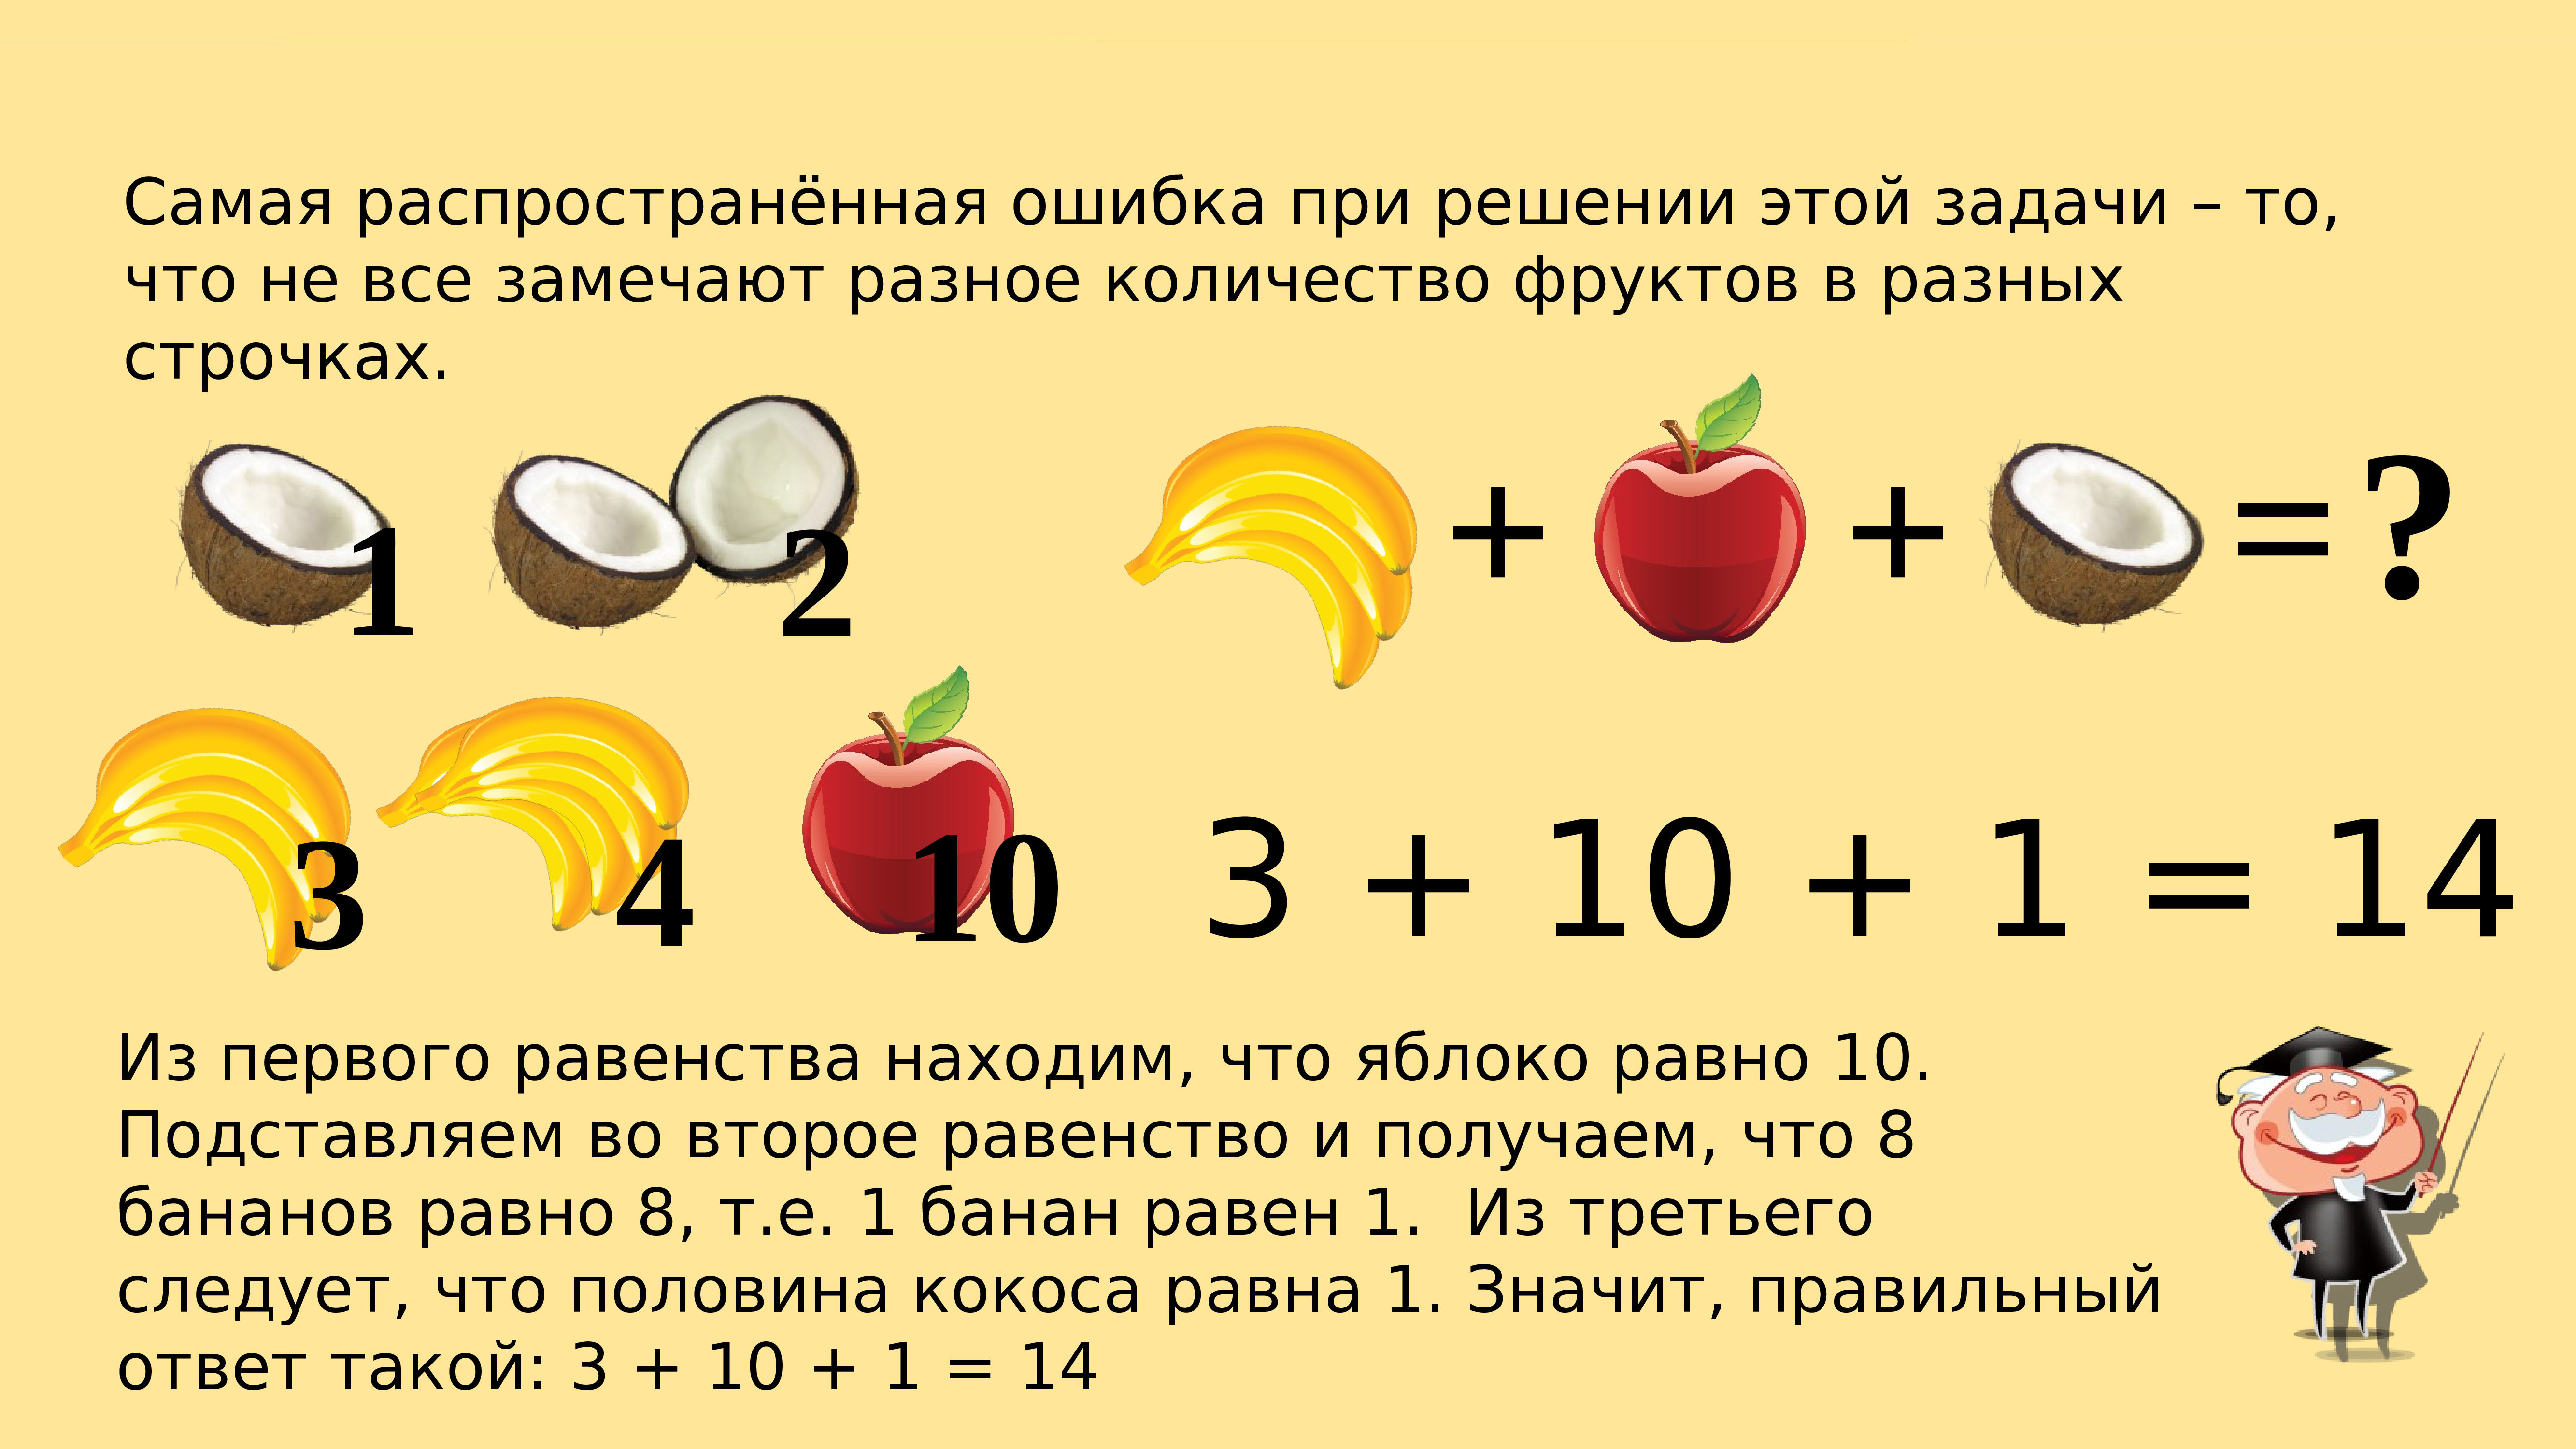 Задачи про фрукты. Pflfxb YF kjubtr. Задачи с фруктами на логику. Головоломка математическая с фруктами. Математические задачи с фруктами.